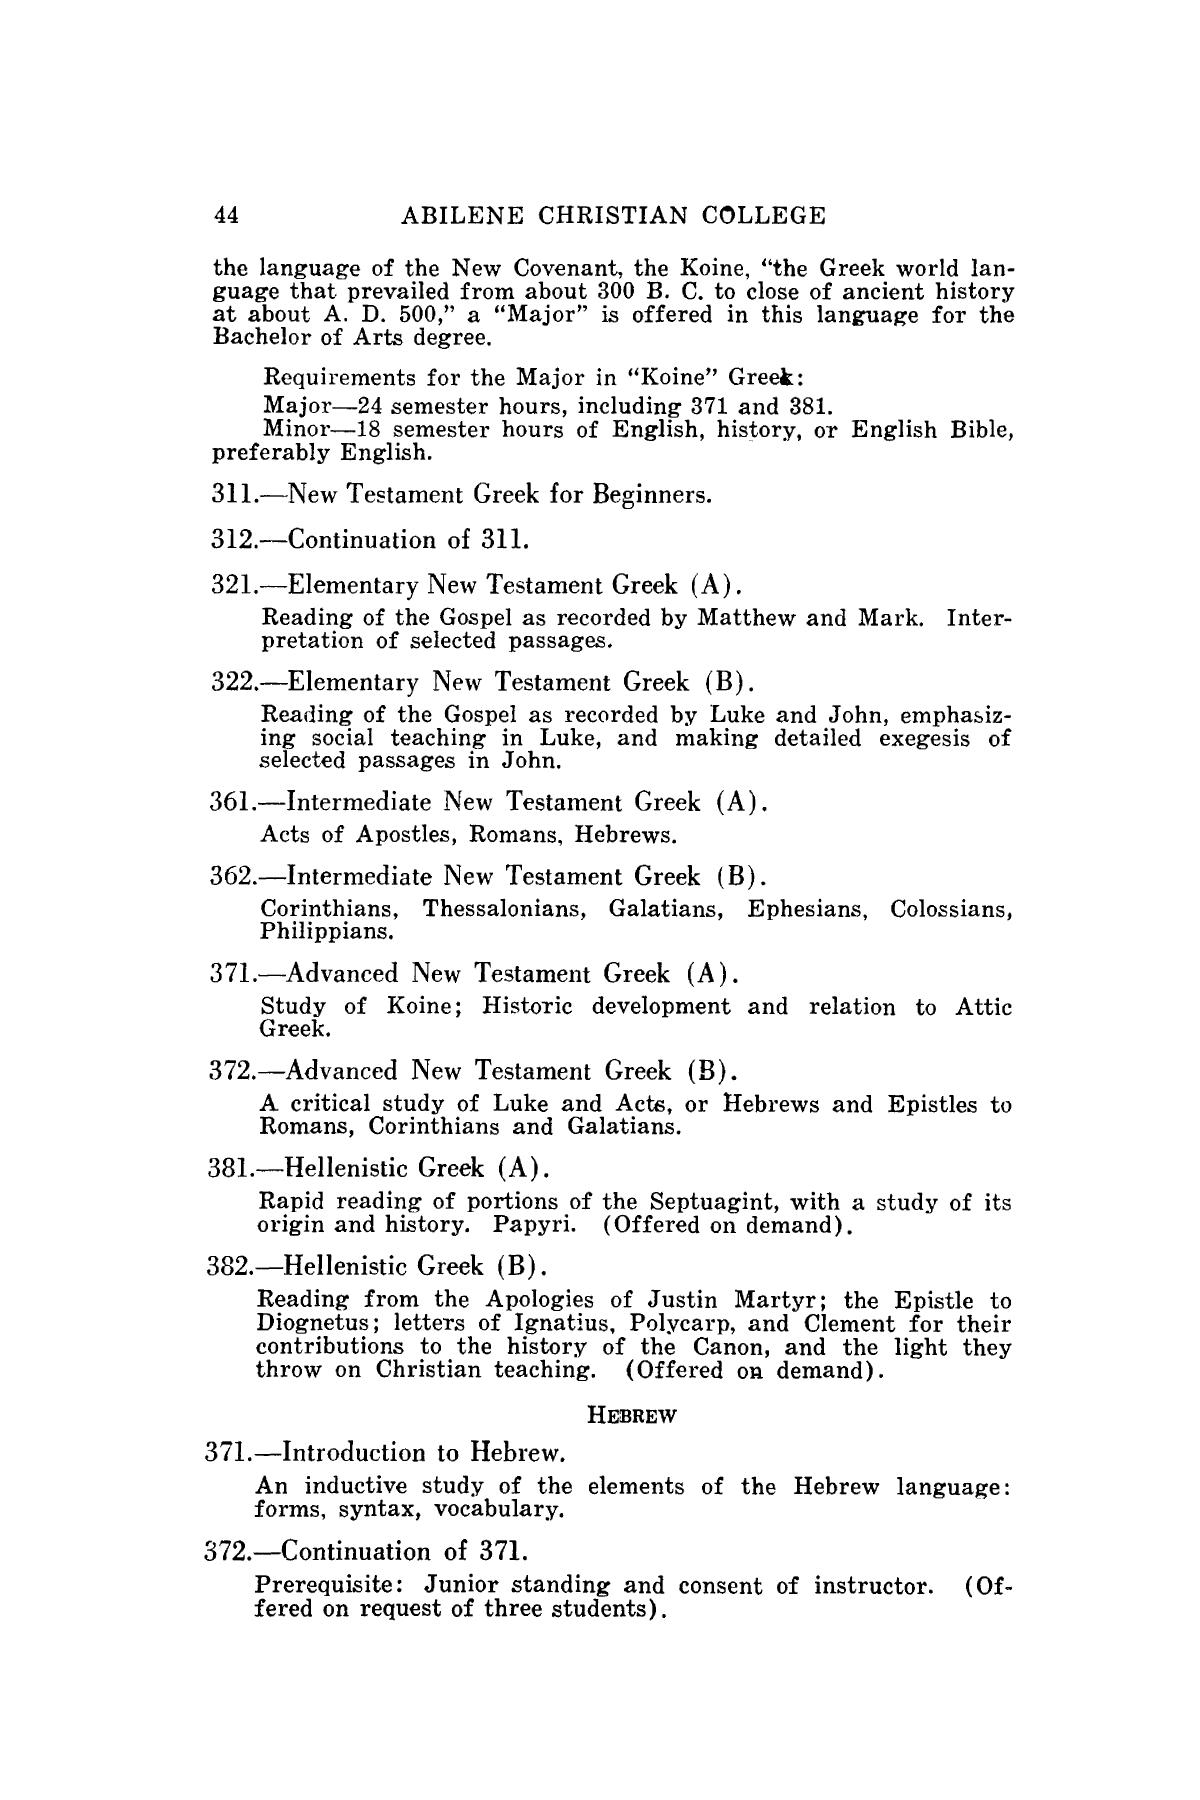 Catalog of Abilene Christian College, 1940-1941
                                                
                                                    44
                                                